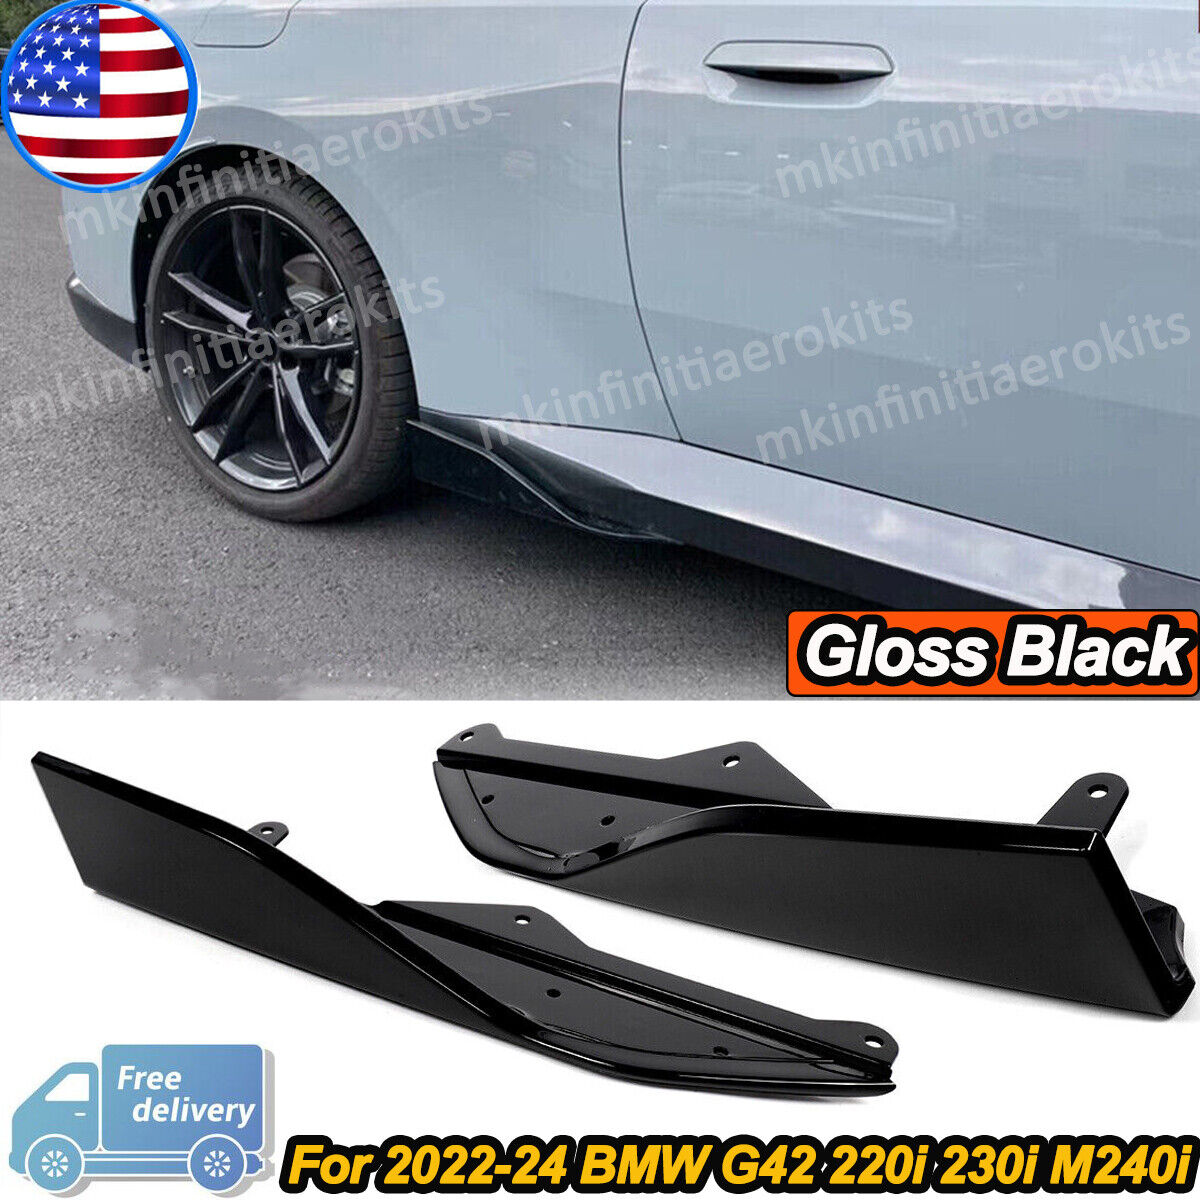 Pair Gloss Black Side Skirt Trim Flaps Cover Splitter For BMW G42 230i 2022-24